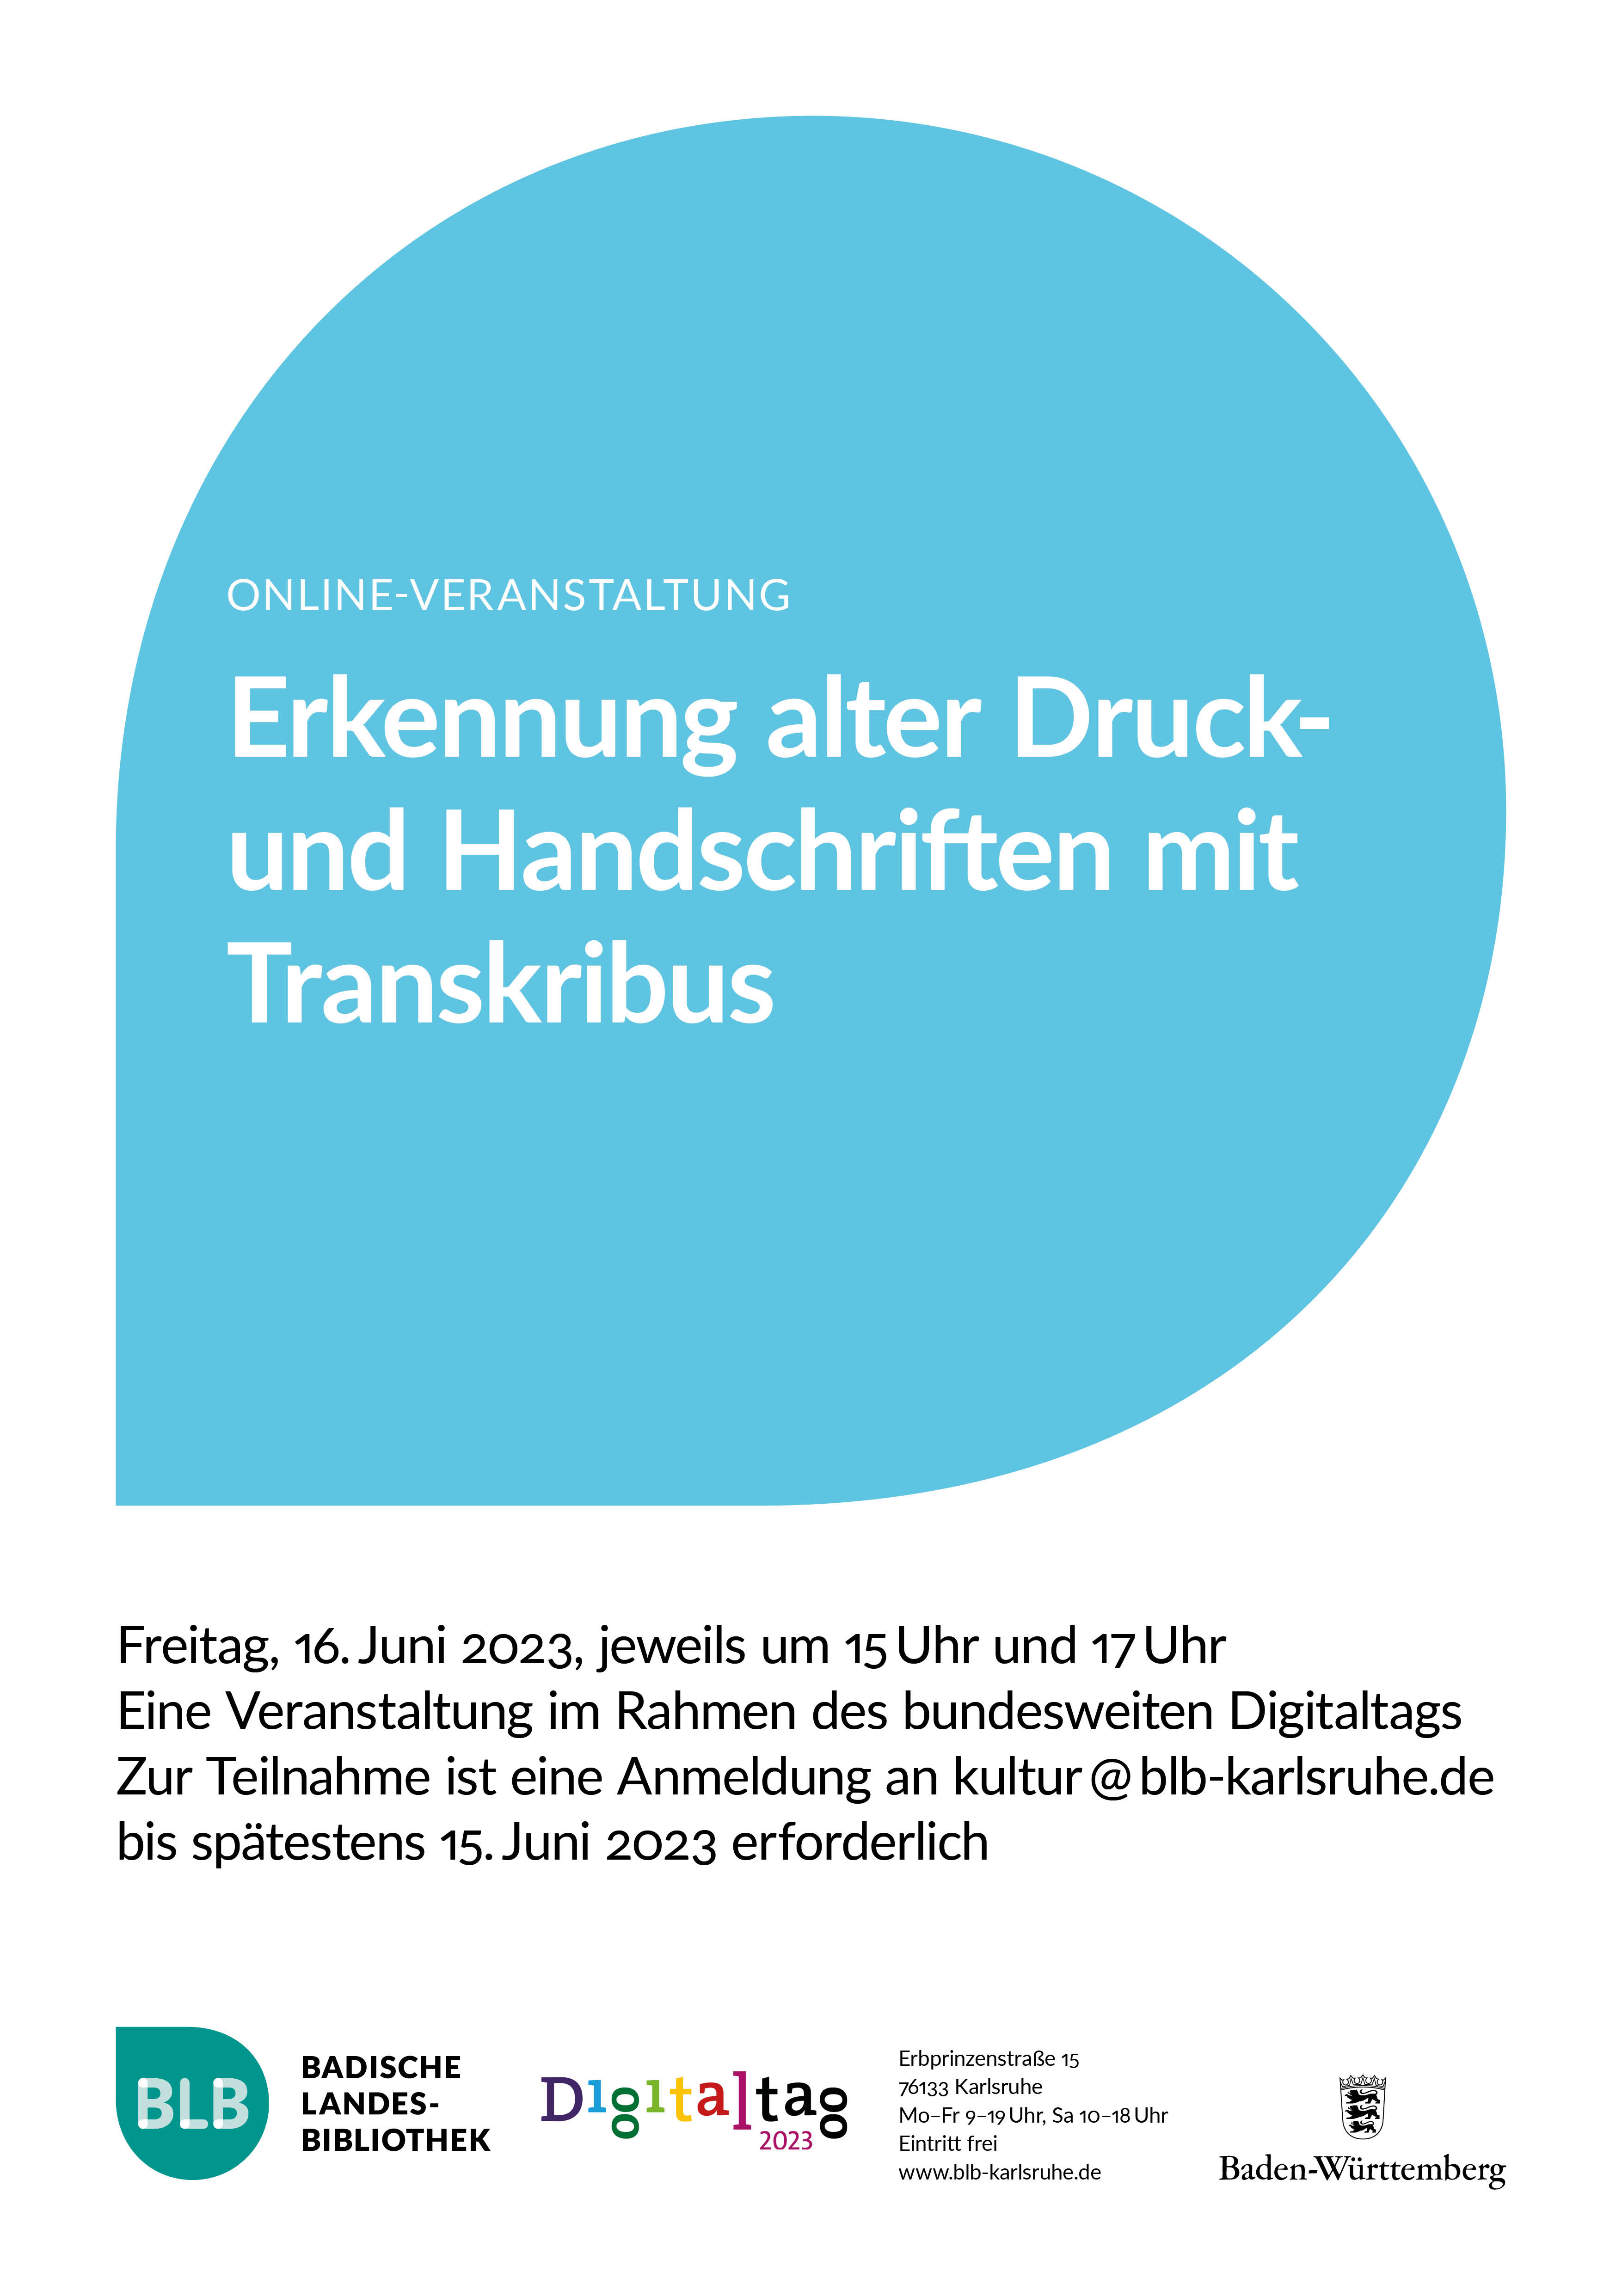 Zu sehen ist ein blaues Monogon mit der Aufschrift "Erkennung alter Druck- und Handschriften mit Transkribus". Die Online-Veranstaltung findet am Freitag, dem 16. Juni 2023 jeweils um 15 und um 17 Uhr statt. 